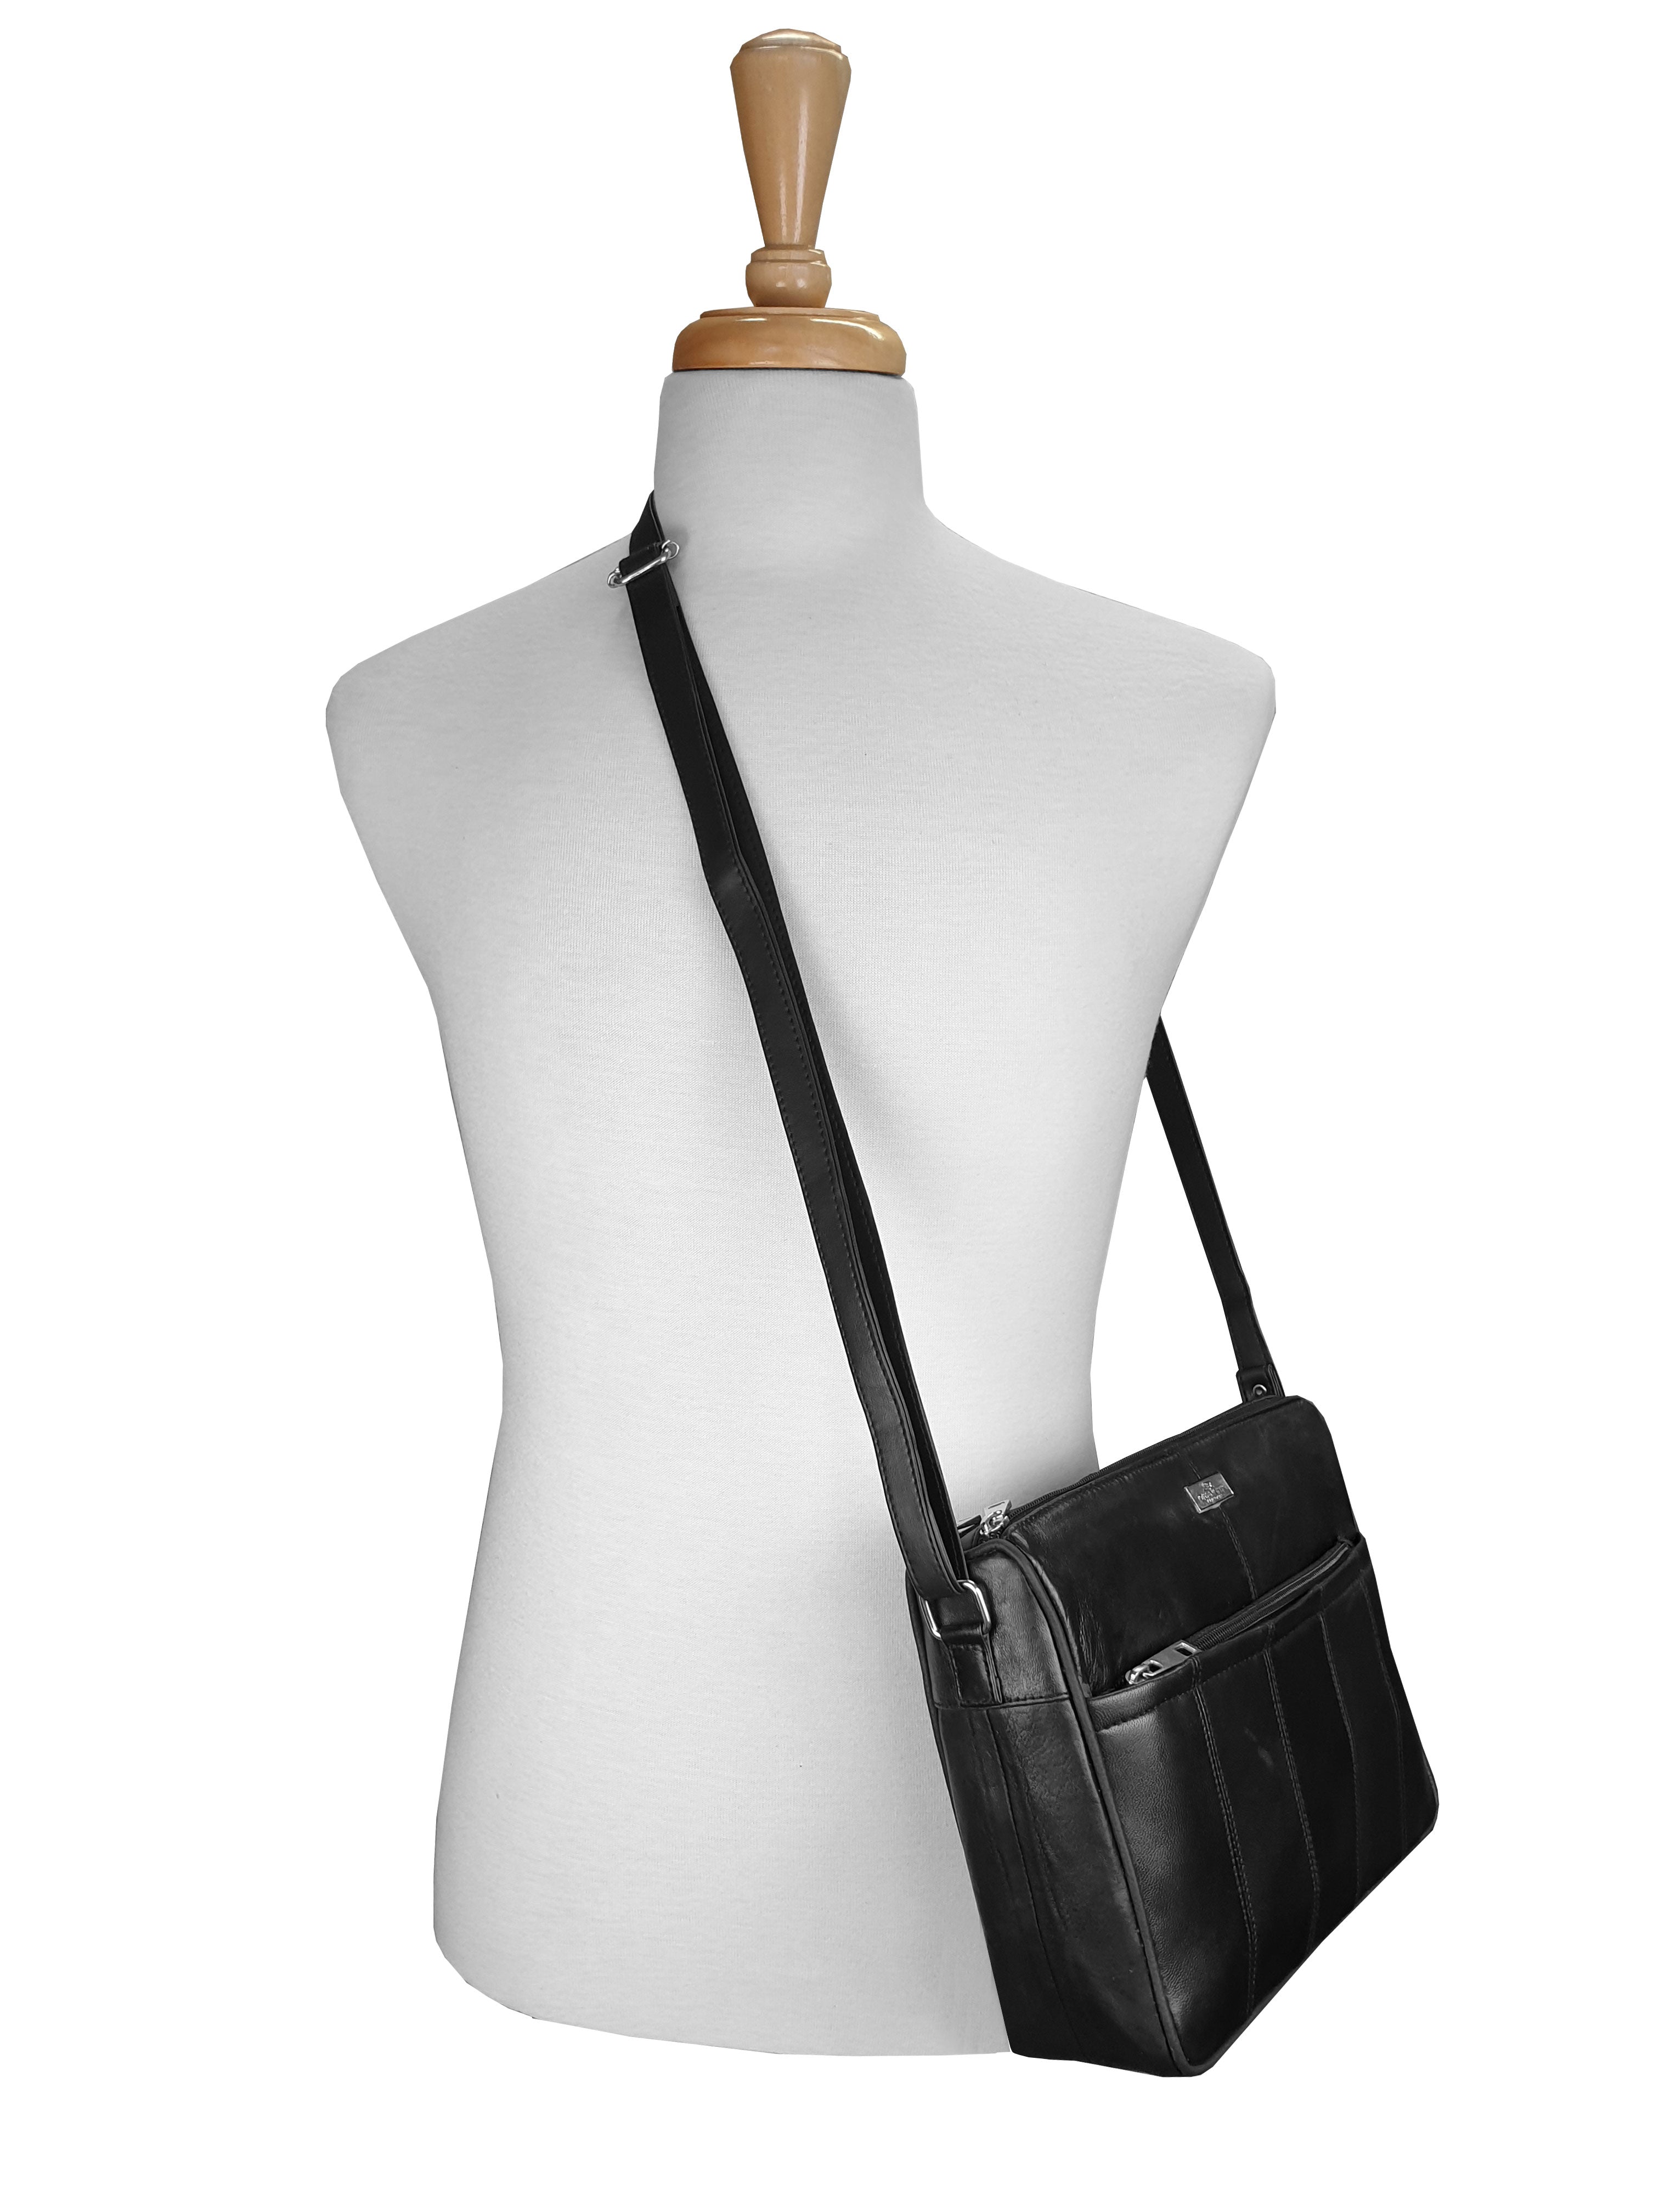 Leather-Handbag-QL171KM.jpg